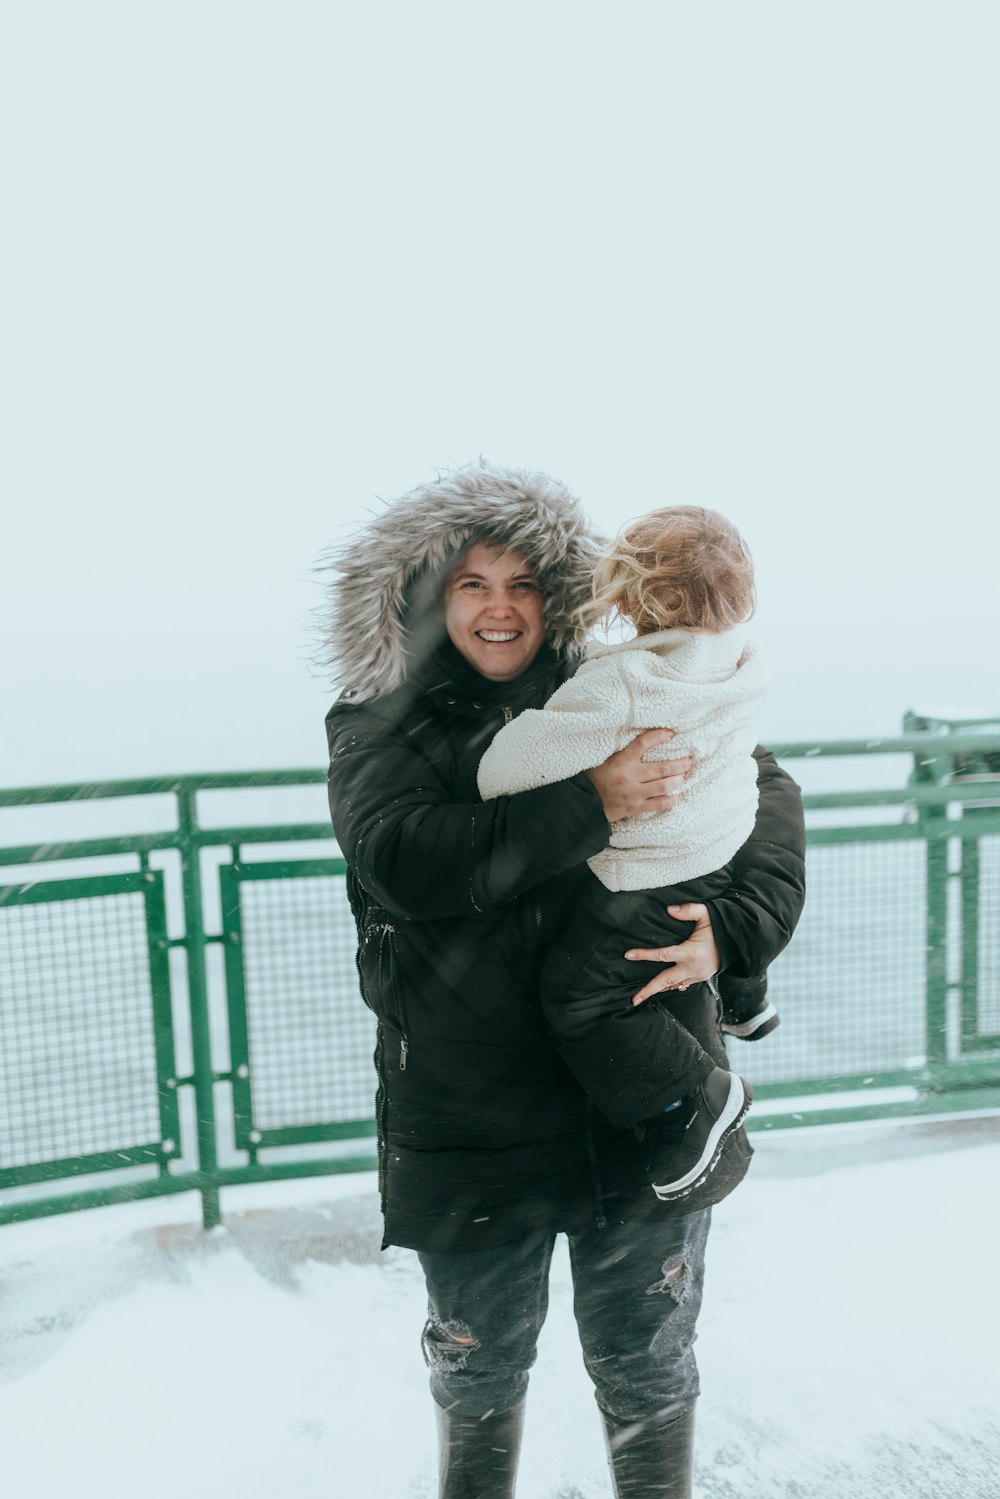 Una mujer sosteniendo a un niño en la nieve